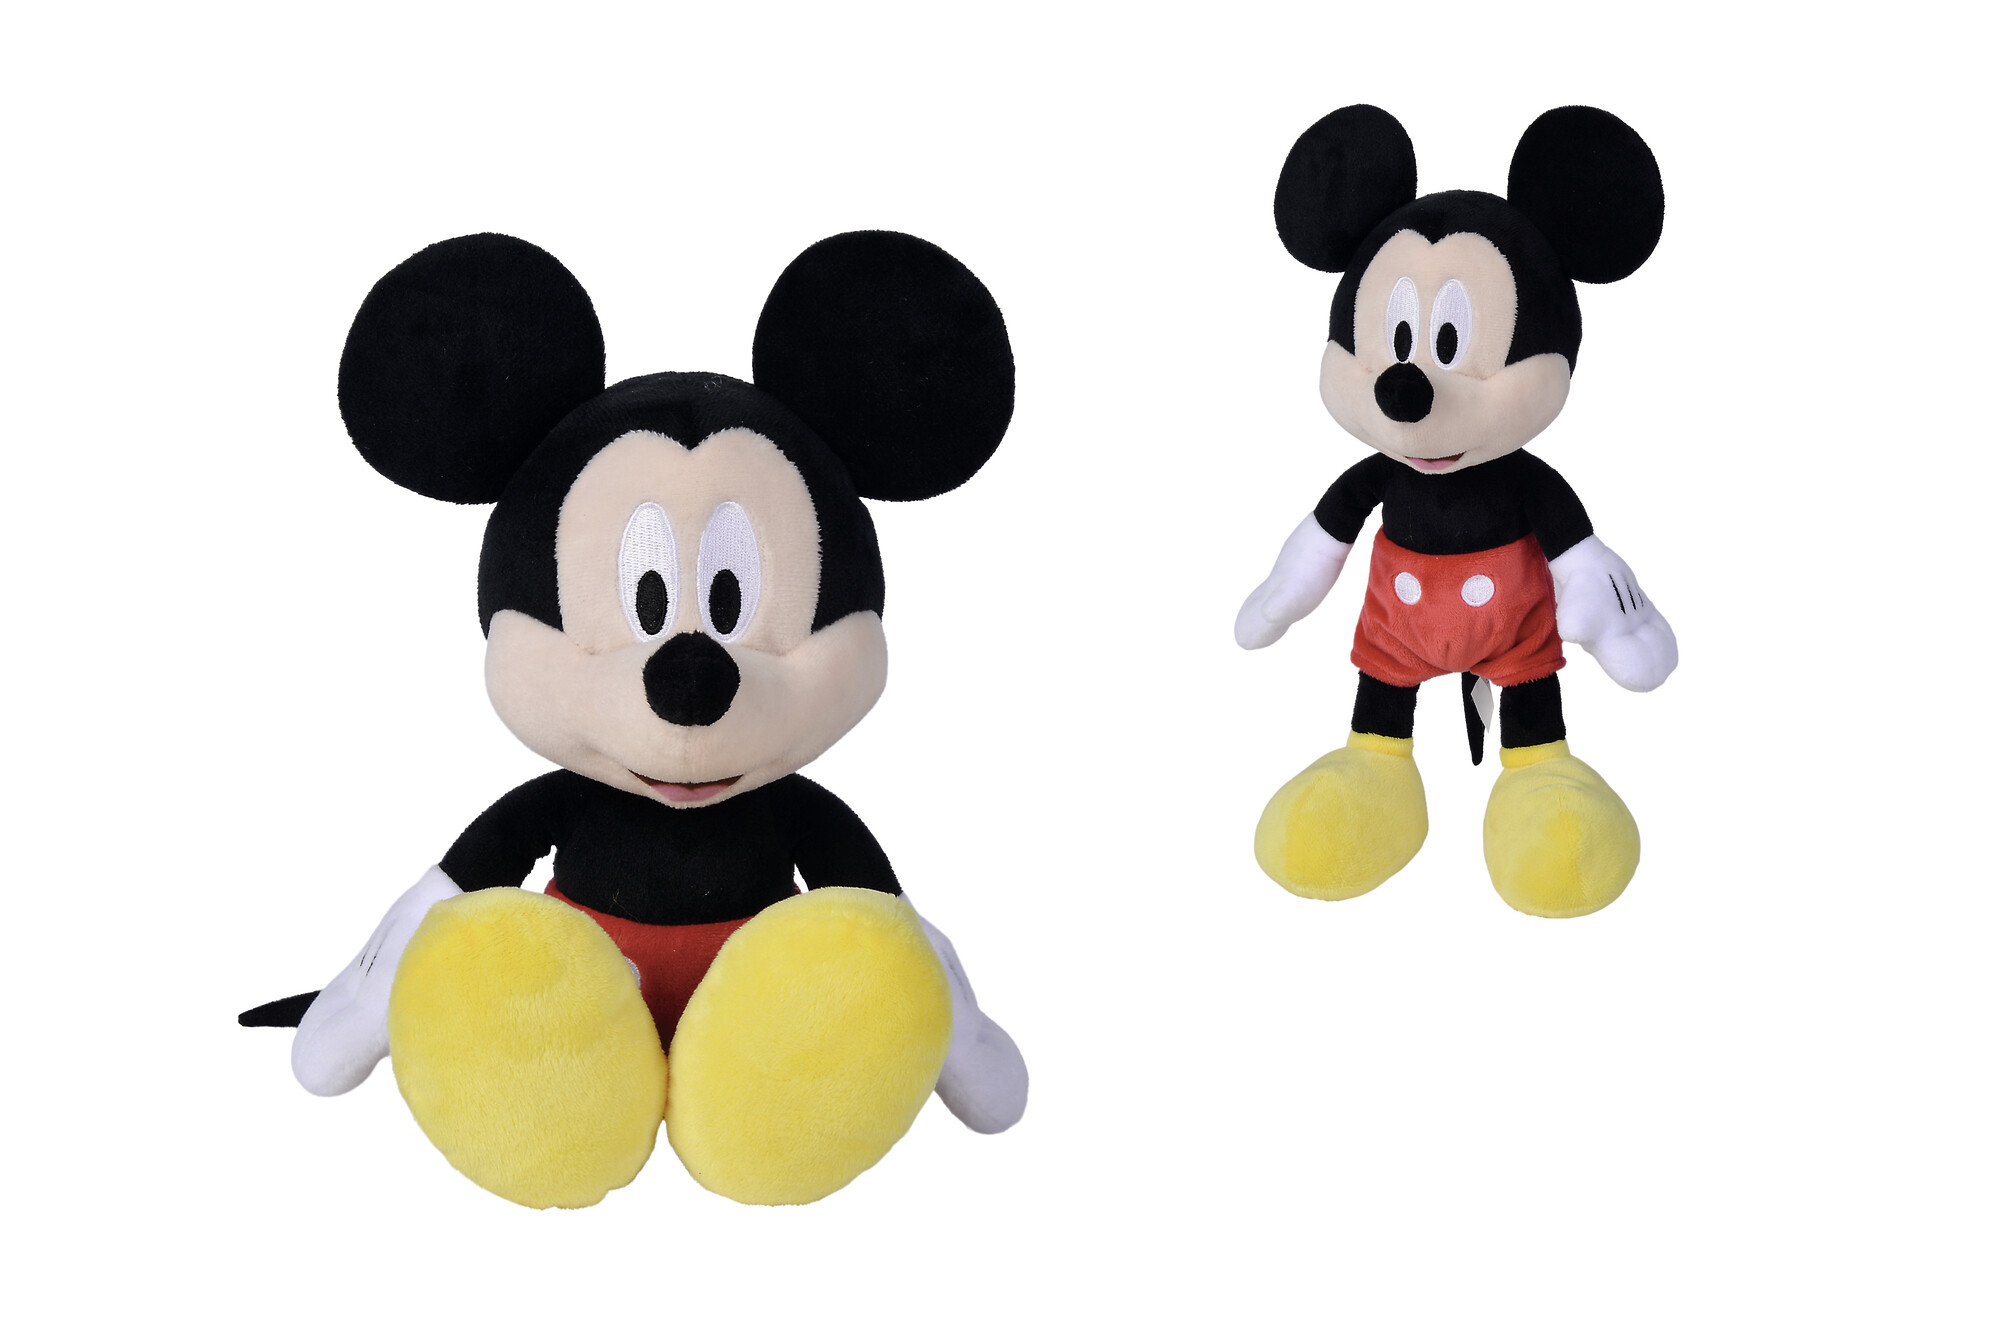 Disney plush di topolino da 25 cm perfetto sin dai primi mesi di vita del bambino - Mickey Mouse